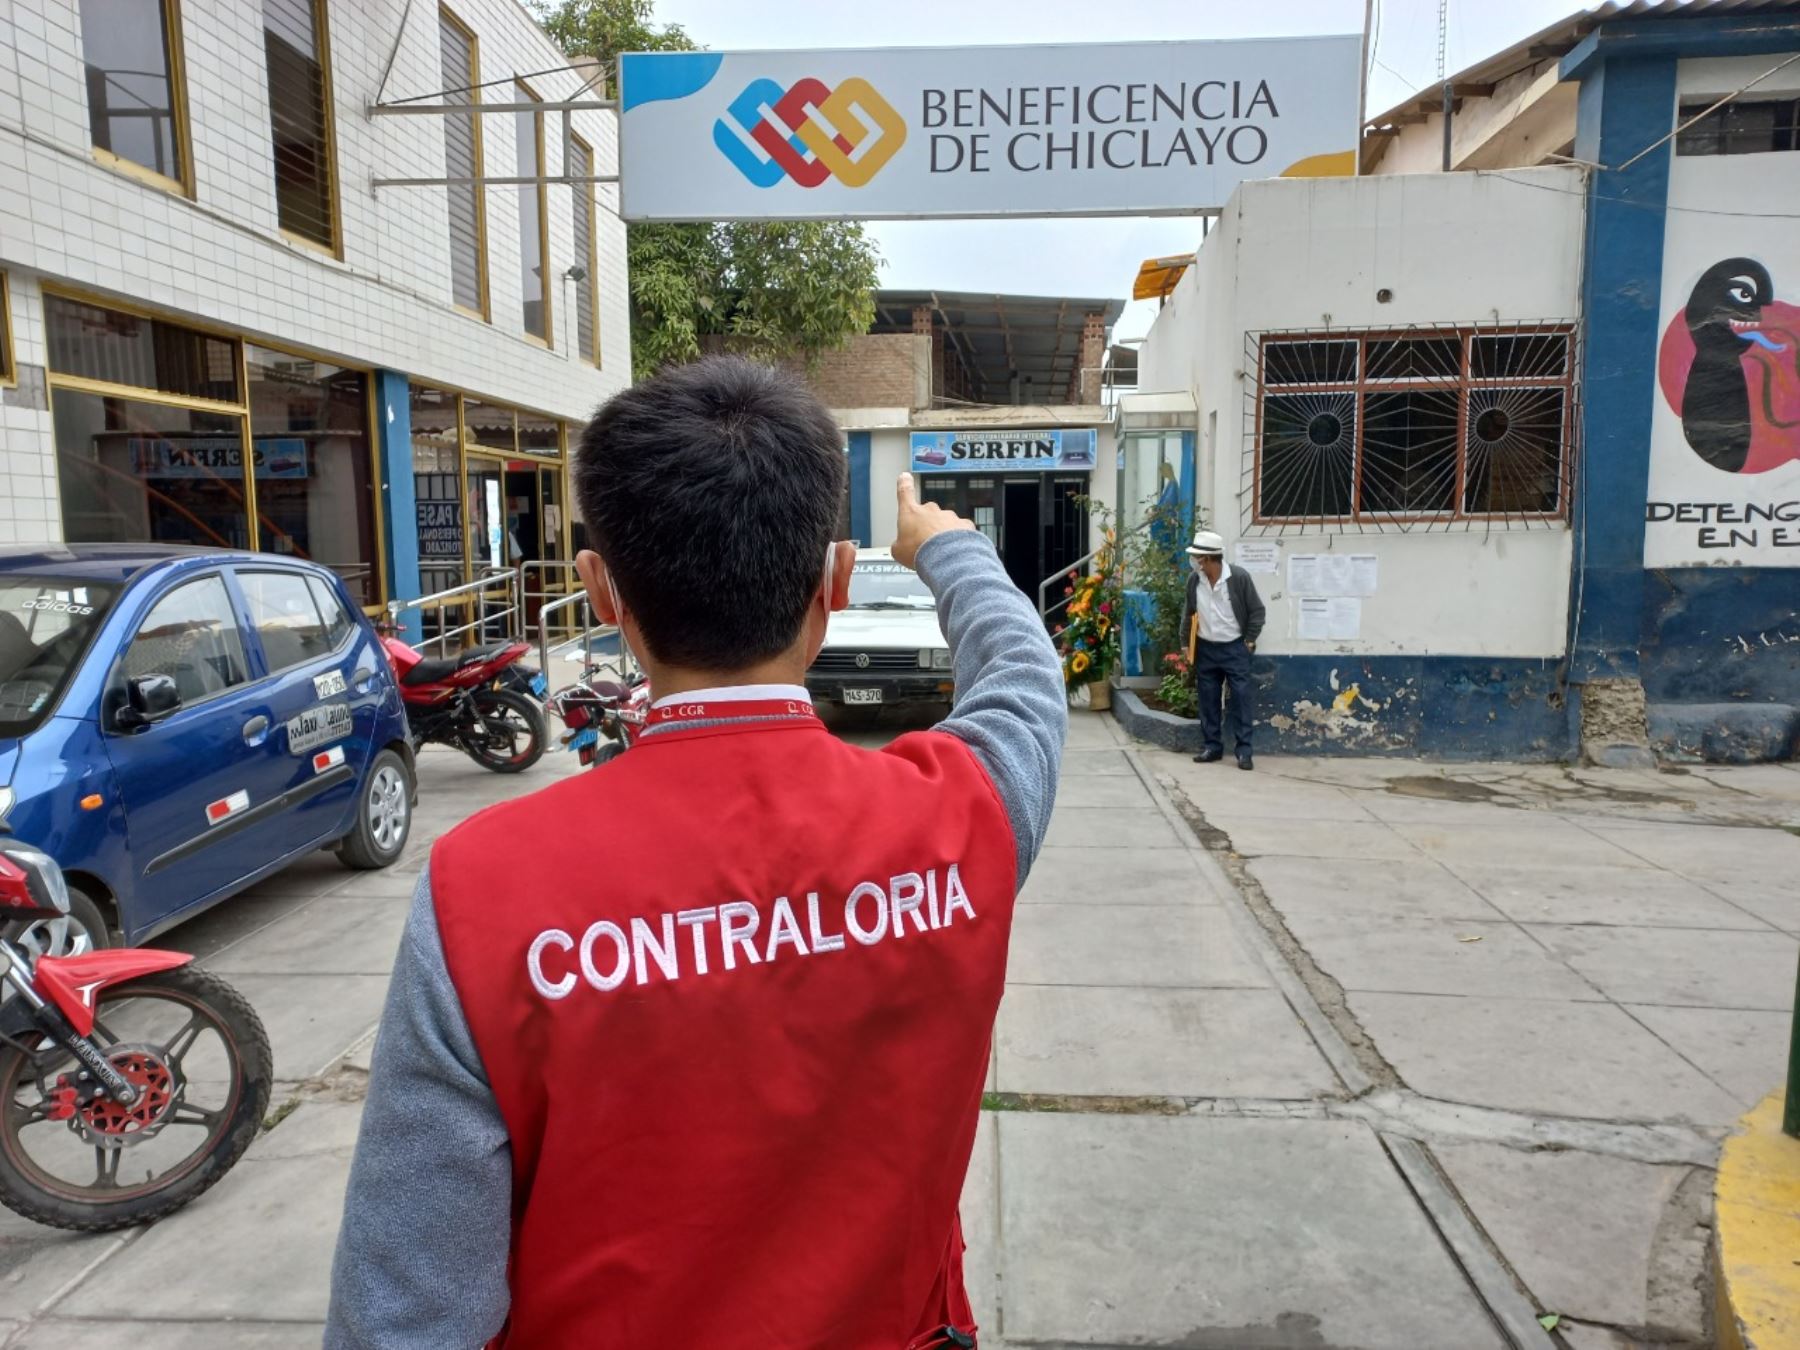 Contraloría pide iniciar acciones legales contra servidores de la municipalidad provincial de Chiclayo.